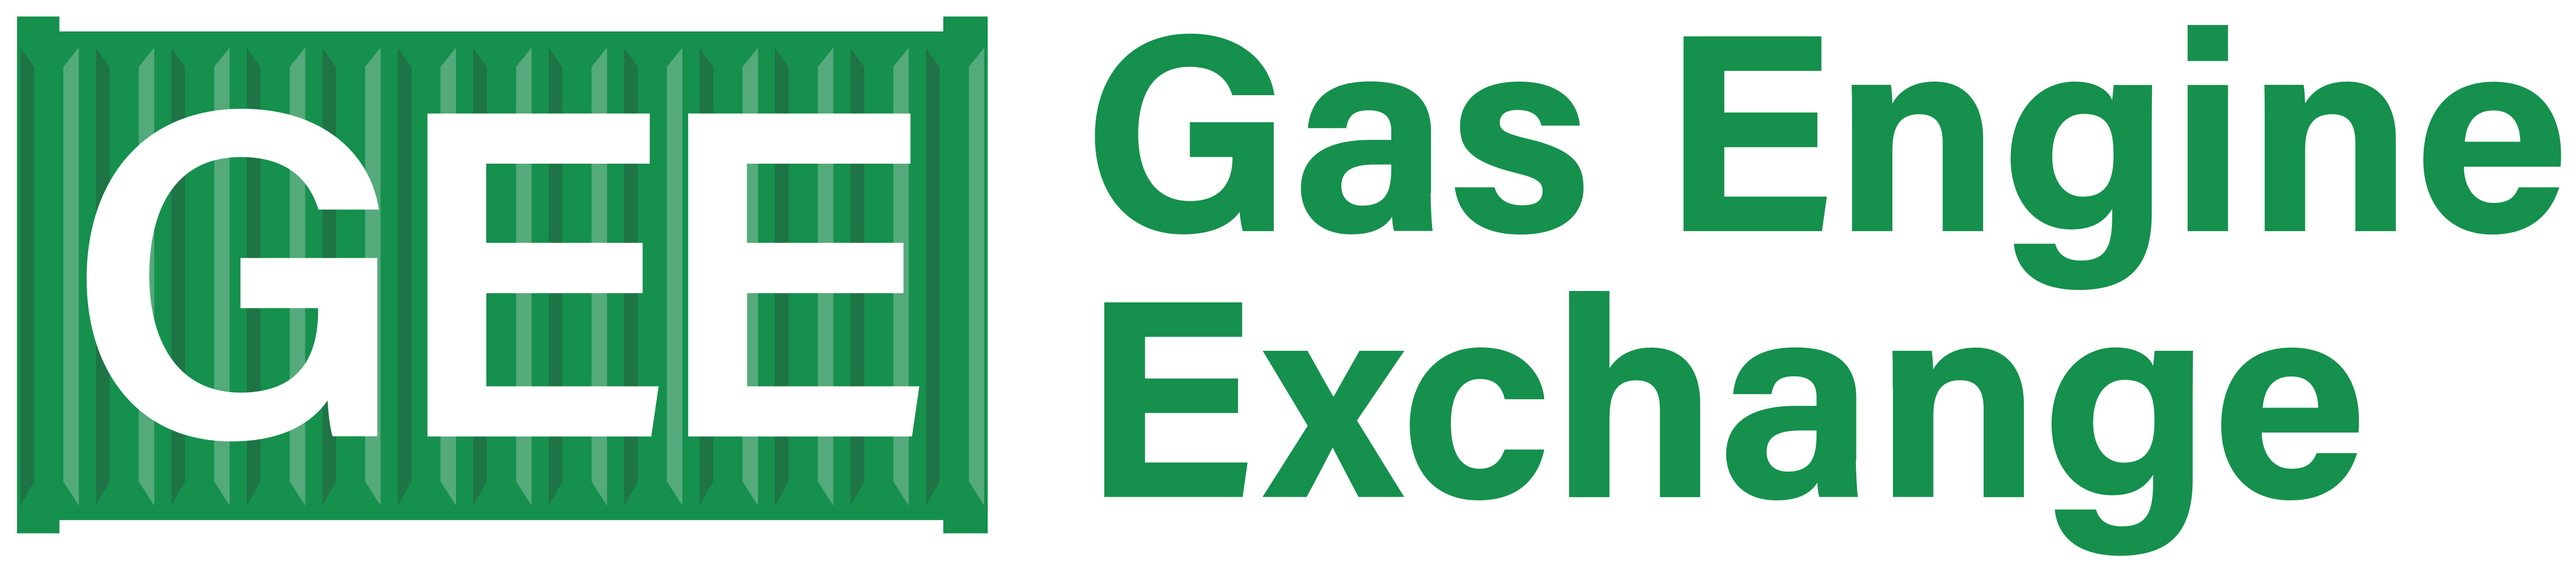 Gas Engine Exchange Ltd